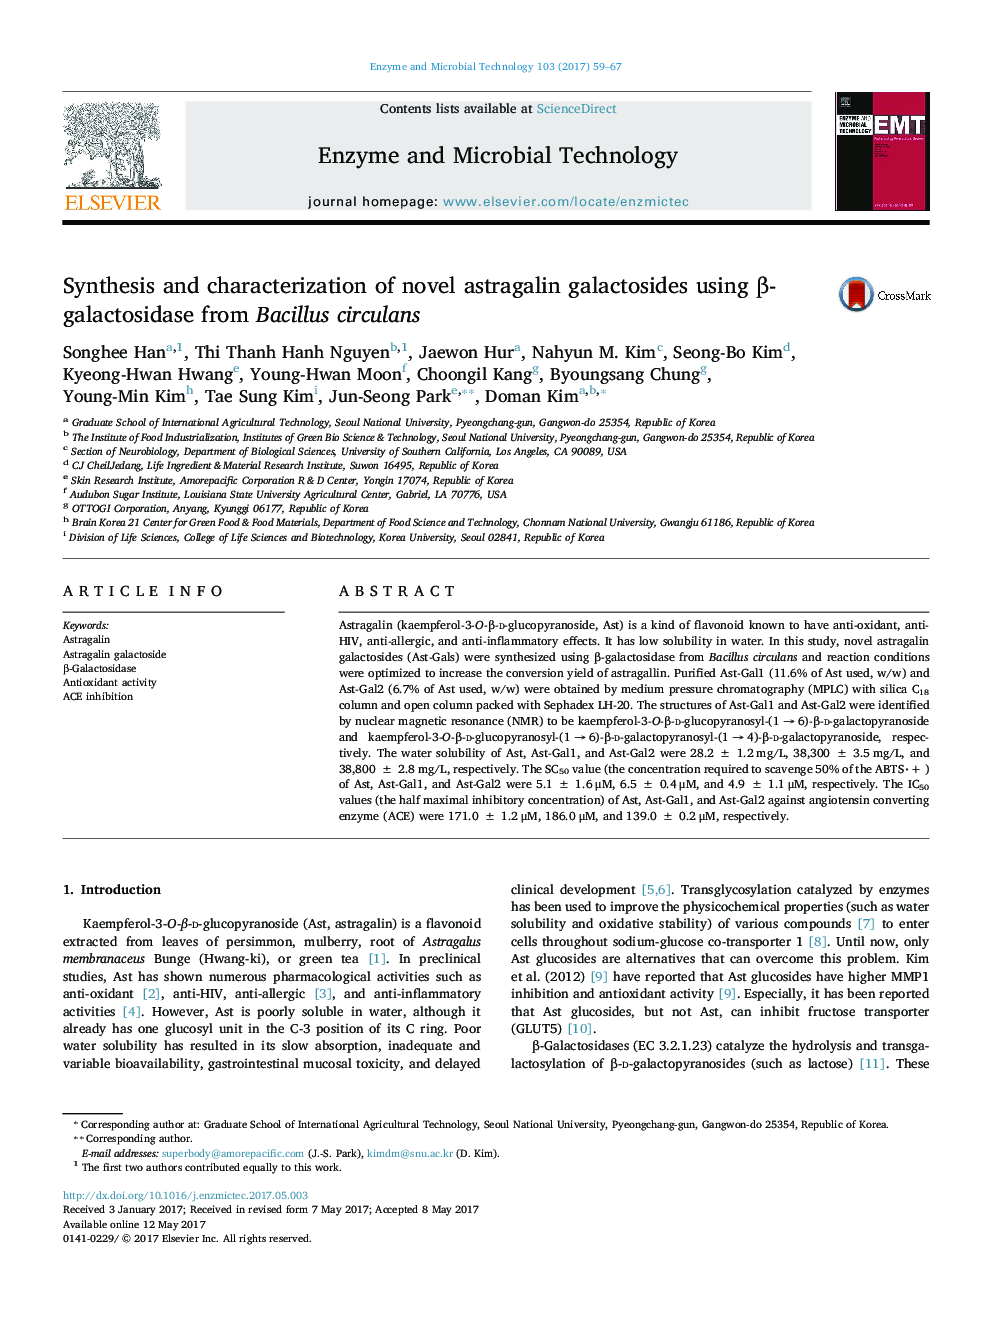 Synthesis and characterization of novel astragalin galactosides using Î²-galactosidase from Bacillus circulans